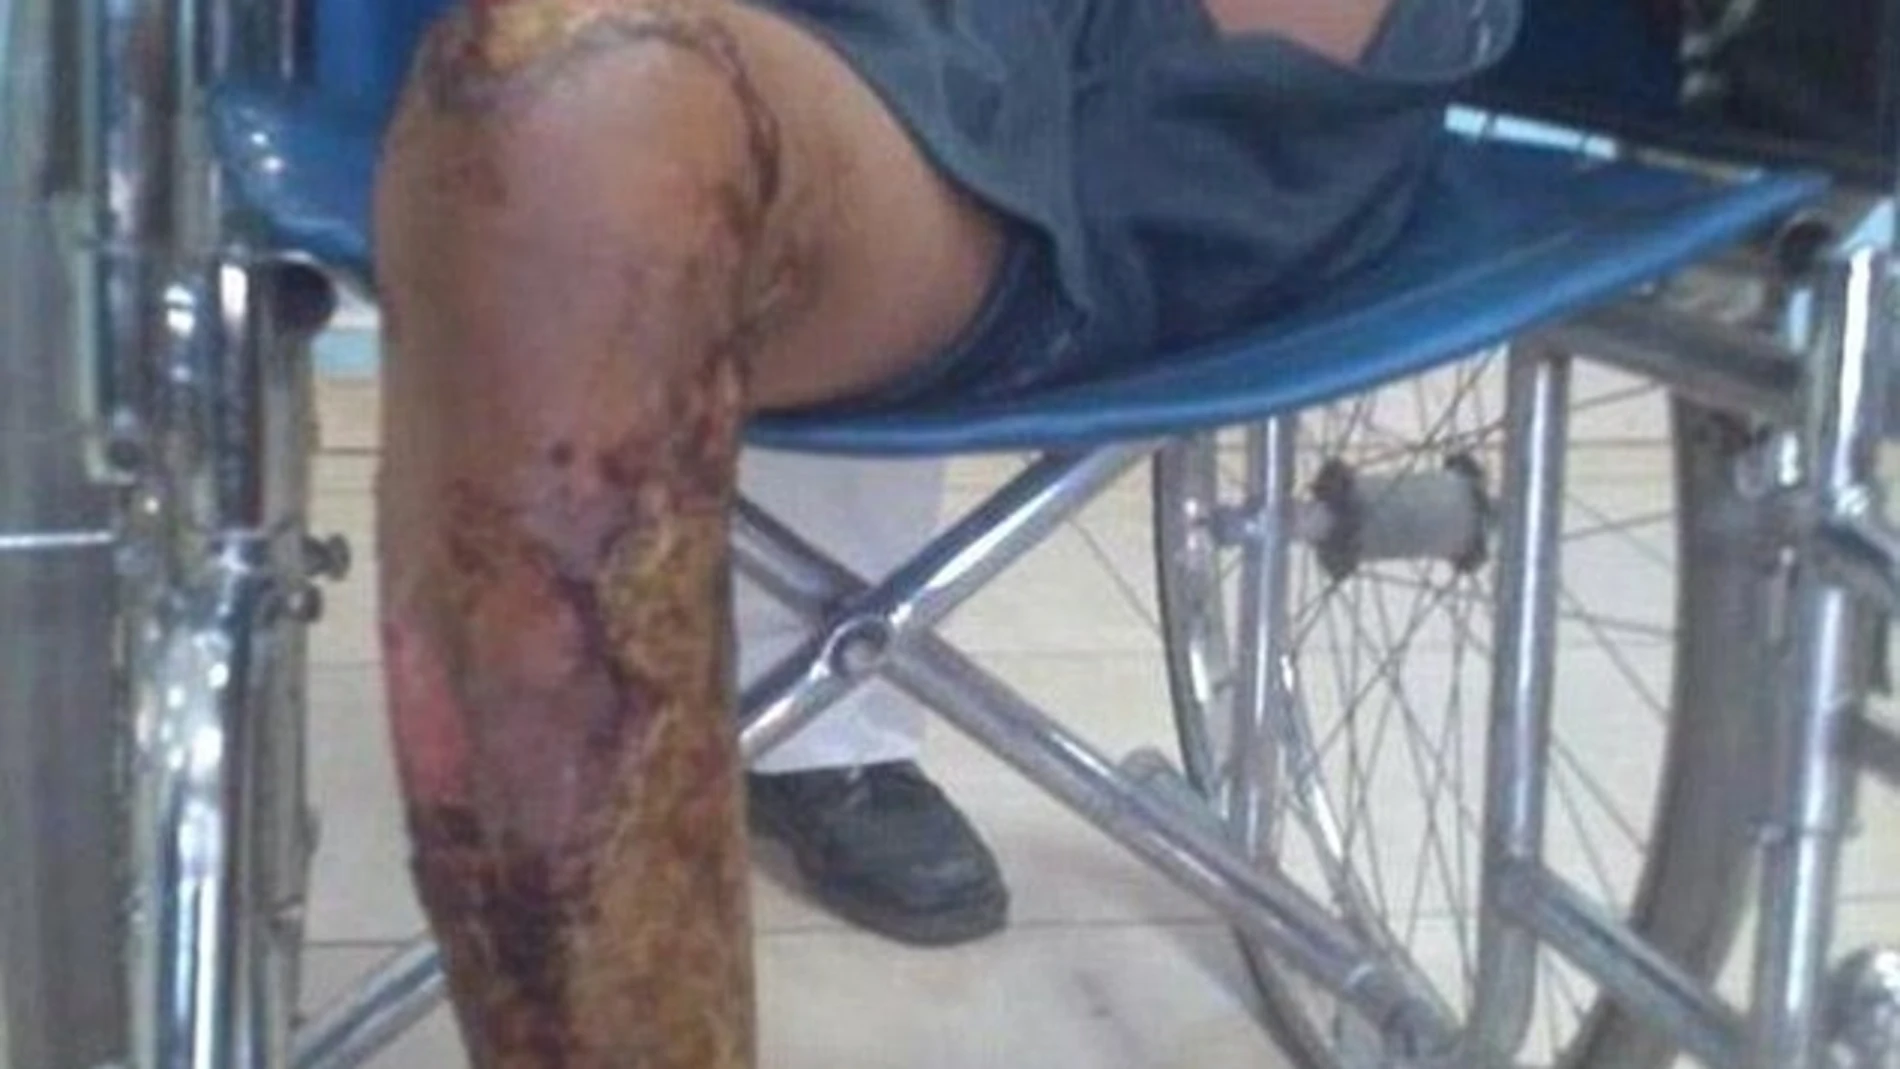 Imagen del estado de la pierna del menor quemado